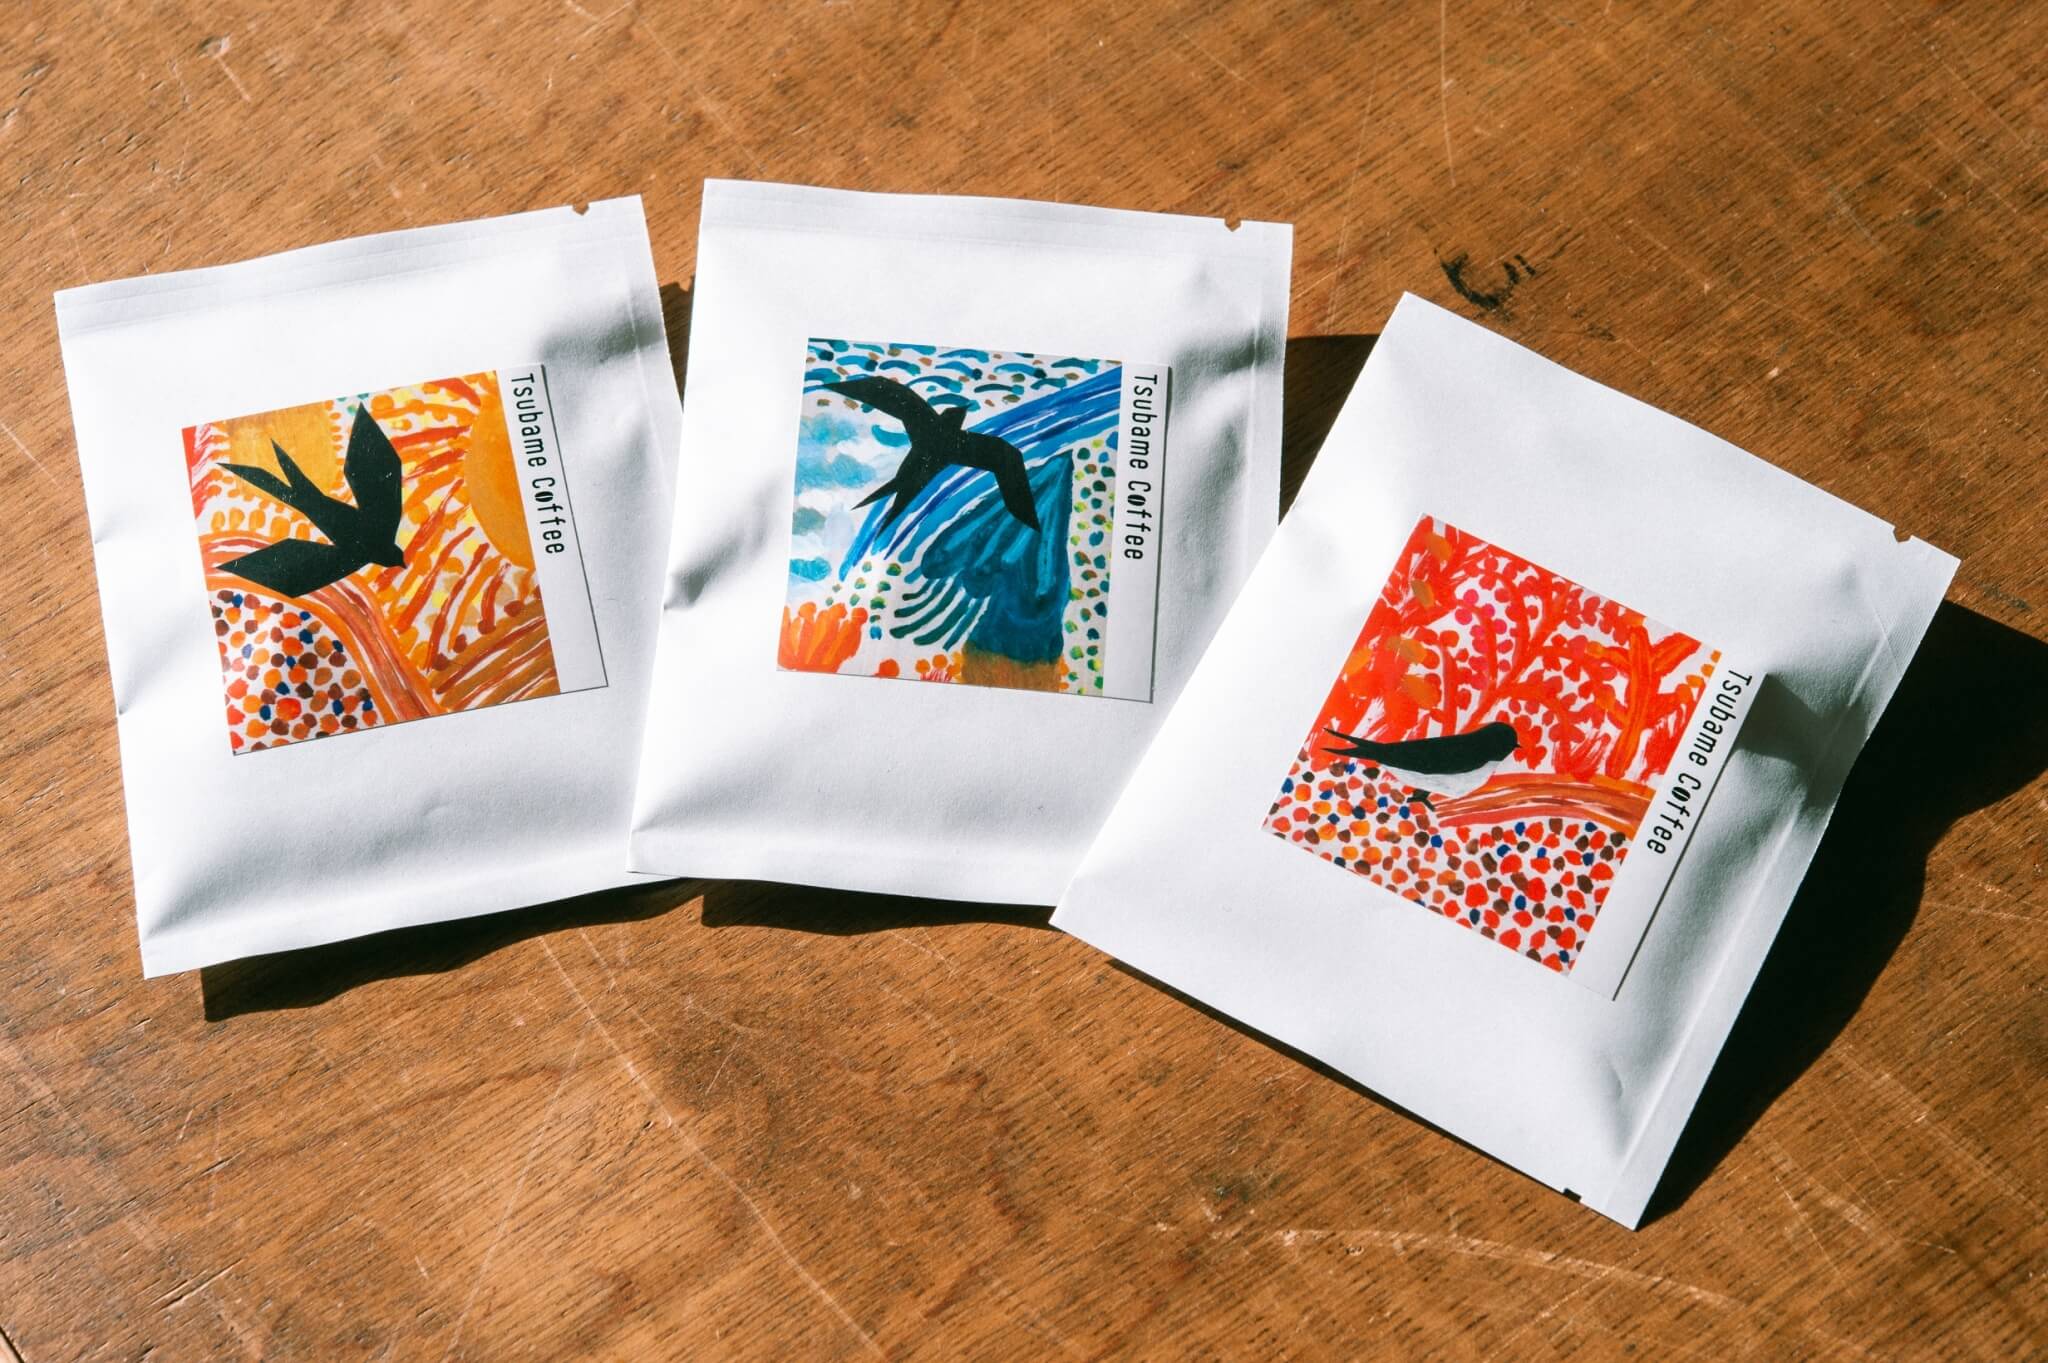 美しいツバメたちがコーヒータイムを彩る 『Tsubame coffee コーヒー豆』 新パッケージ